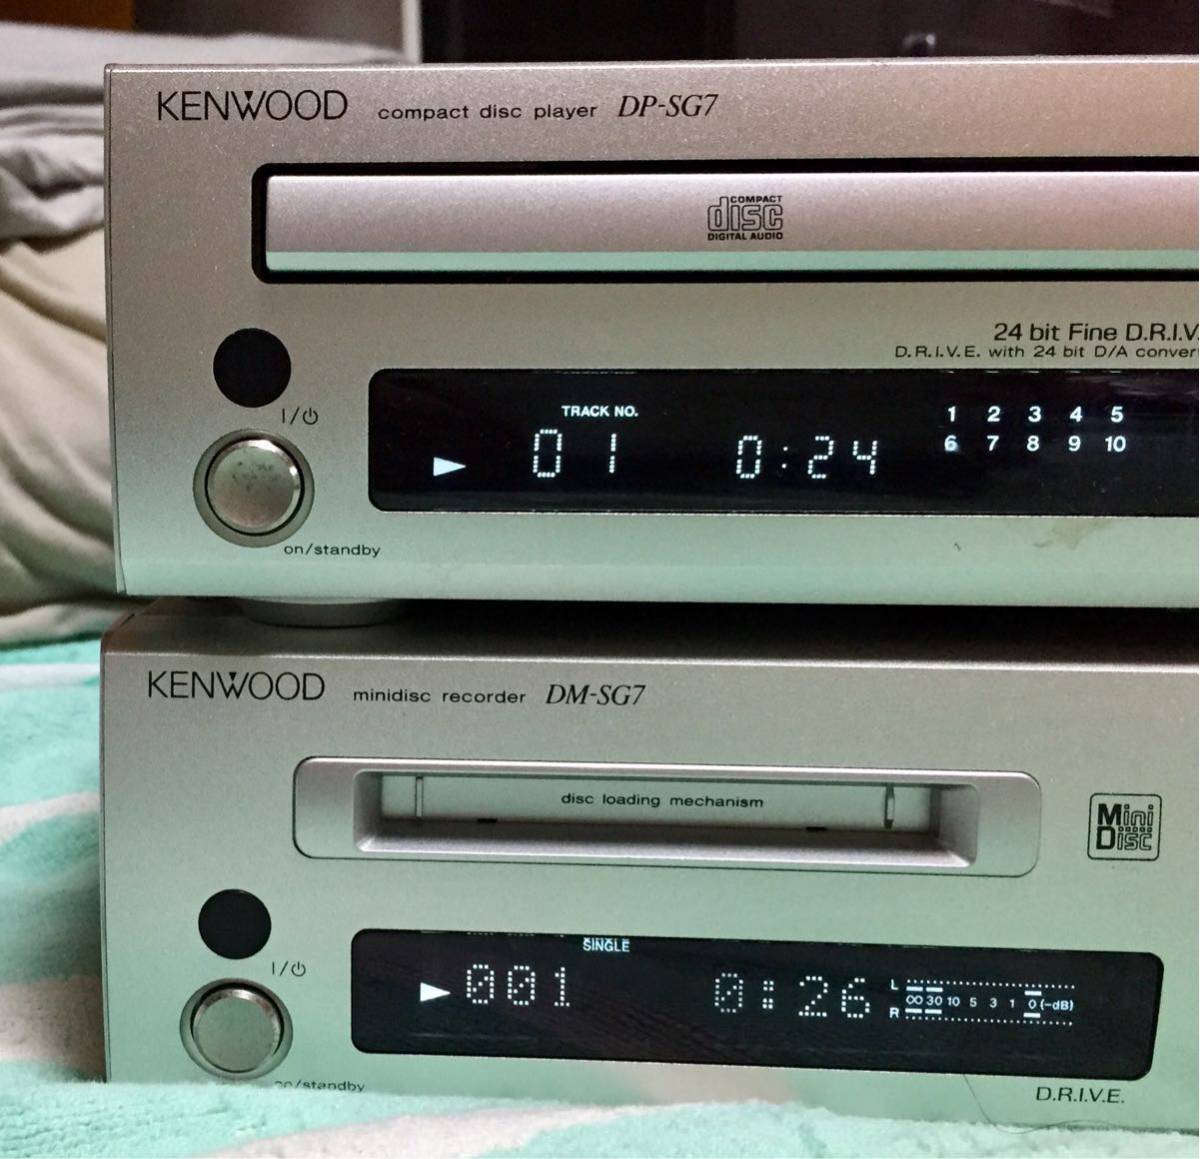 建伍CD播放器DP - SG 7迷你光盤錄像機DM - SG 7 原文:KENWOOD CDプレイヤーDP-SG7 ミニディスクレコーダーDM-SG7